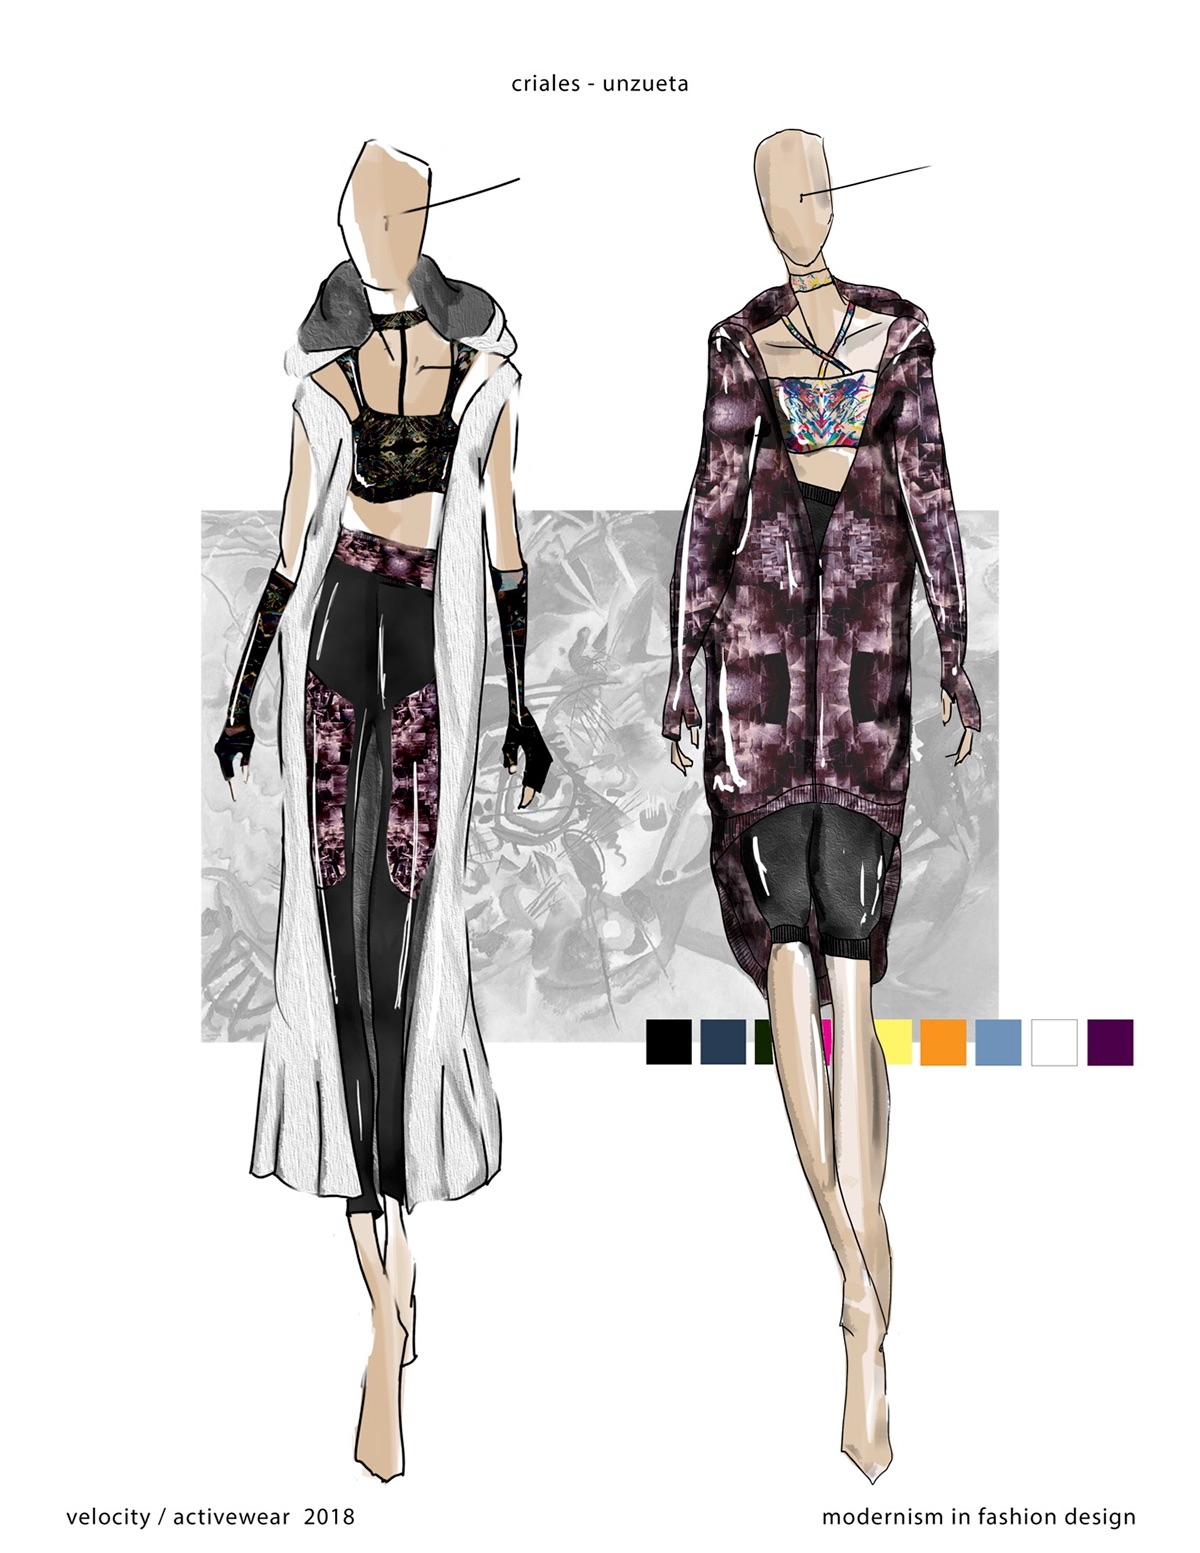 activewear 20thcentury fashionillustration DigitalIllustration cad